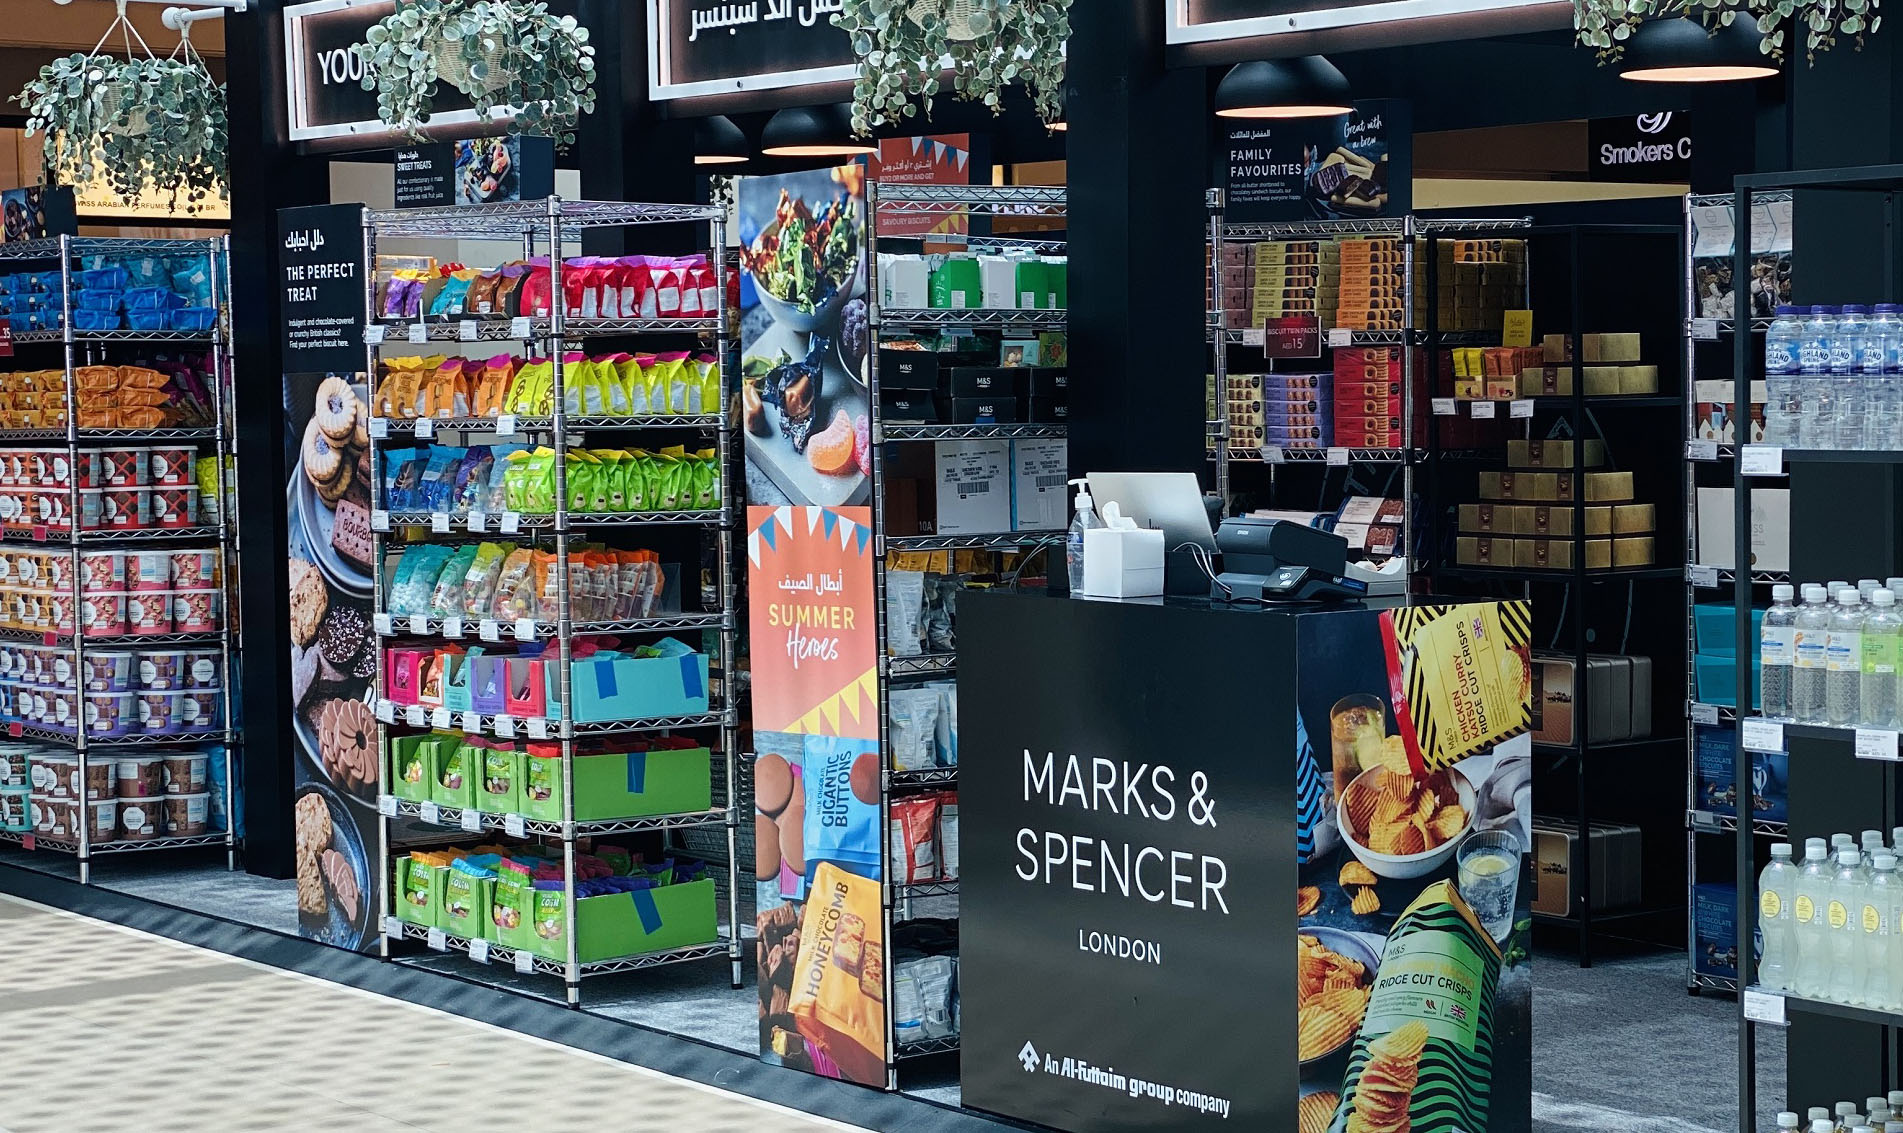 Marks & Spencer pop-up